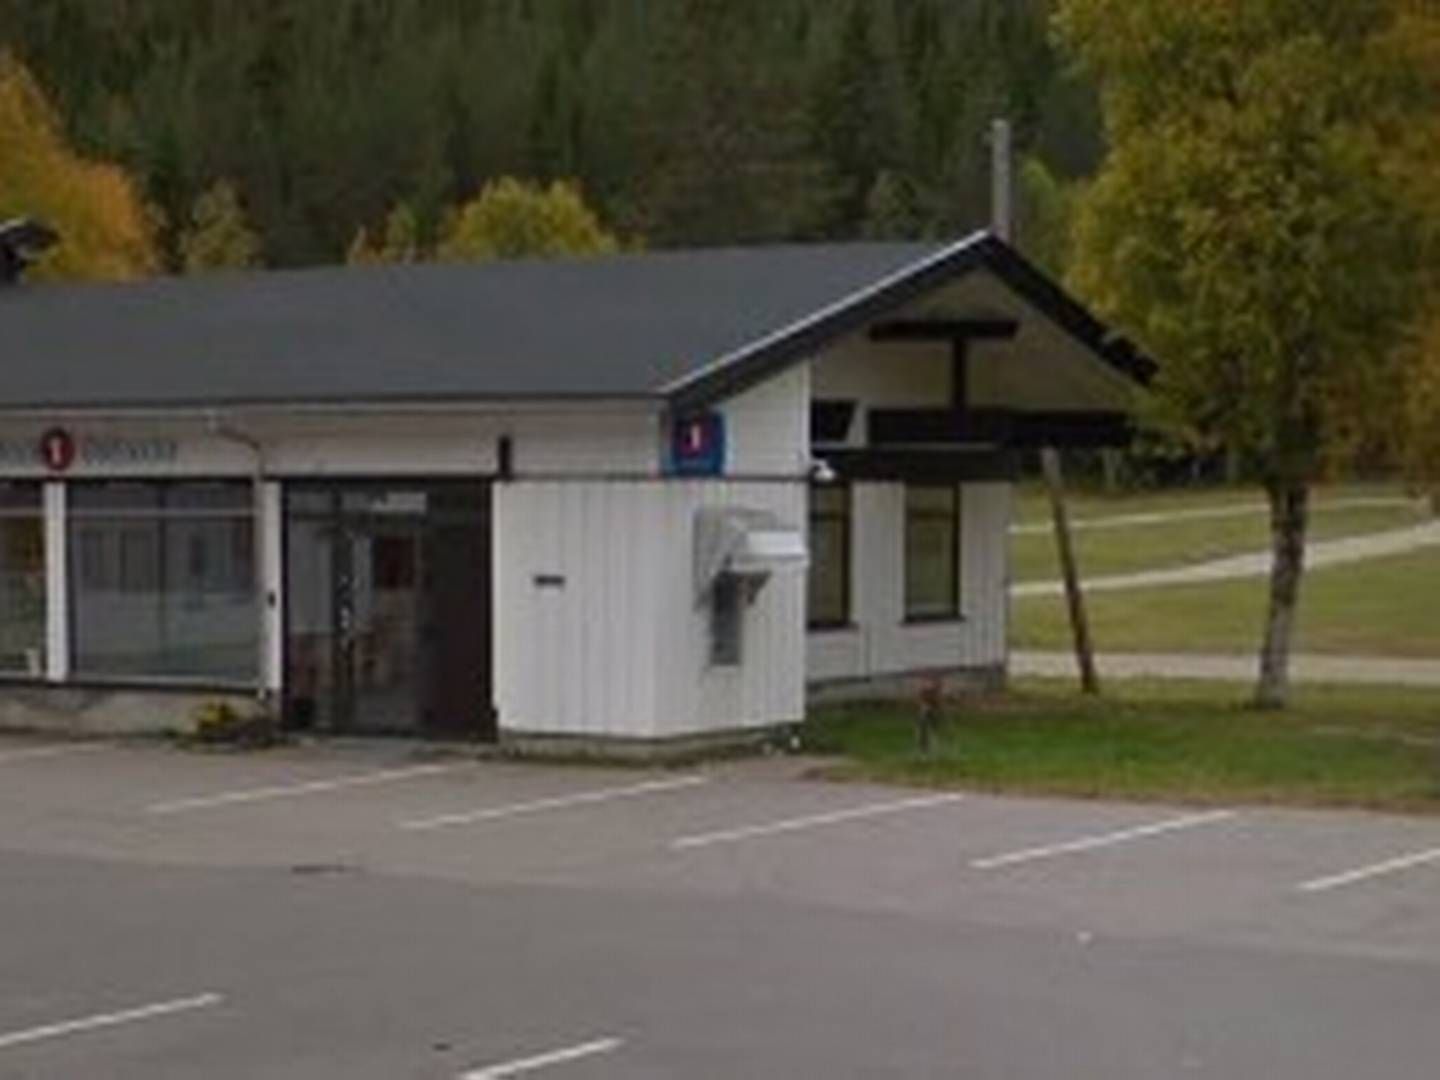 Denne minibanken i Engerdal har vært ute av drift i en måned etter et innbruddsforsøk.